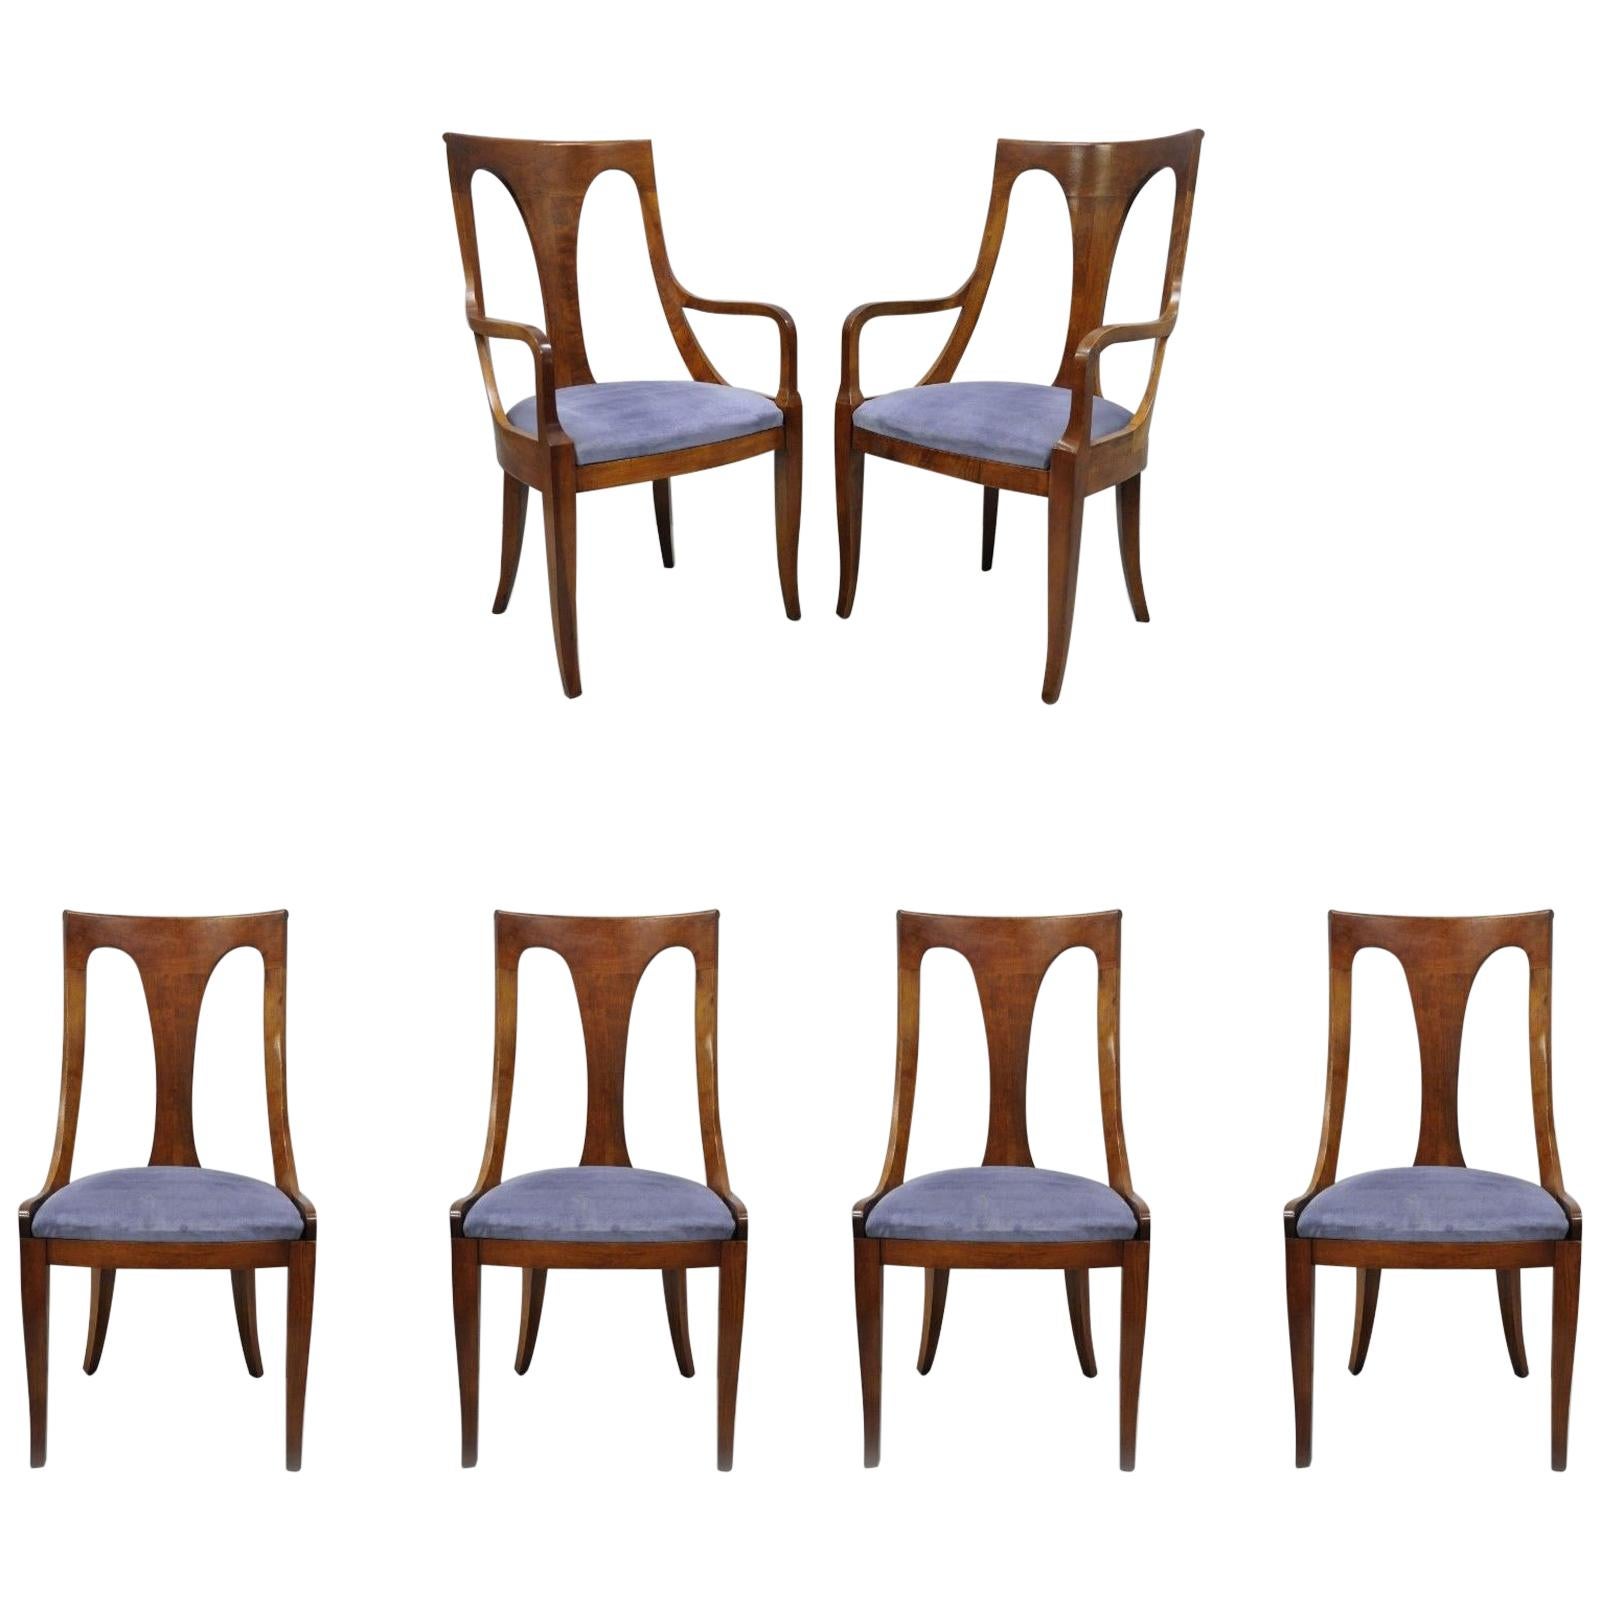 Sechs Nussbaumstühle im Regency-Stil mit geschwungener Rückenlehne und Säbelbeinen im Esszimmer